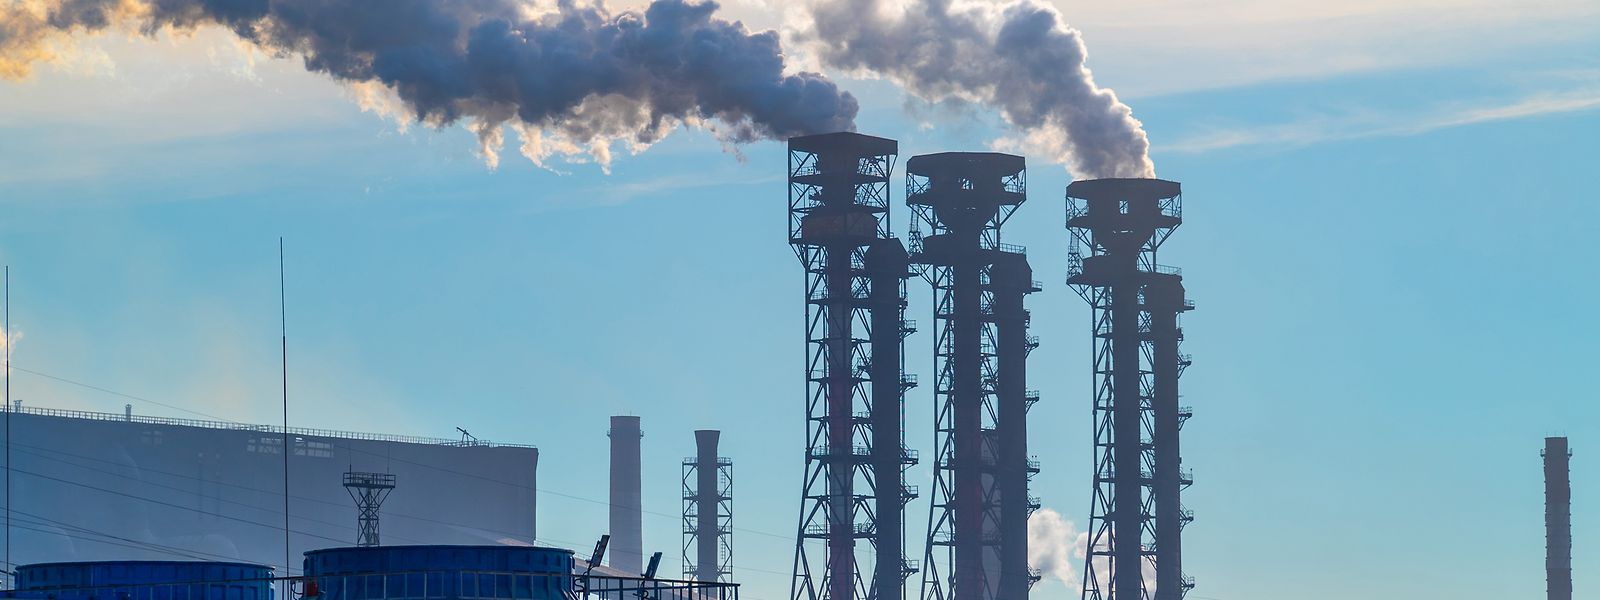 Avec la hausse des prix de l'énergie, des risques de fuite de carbone dans certains secteurs sont apparus.